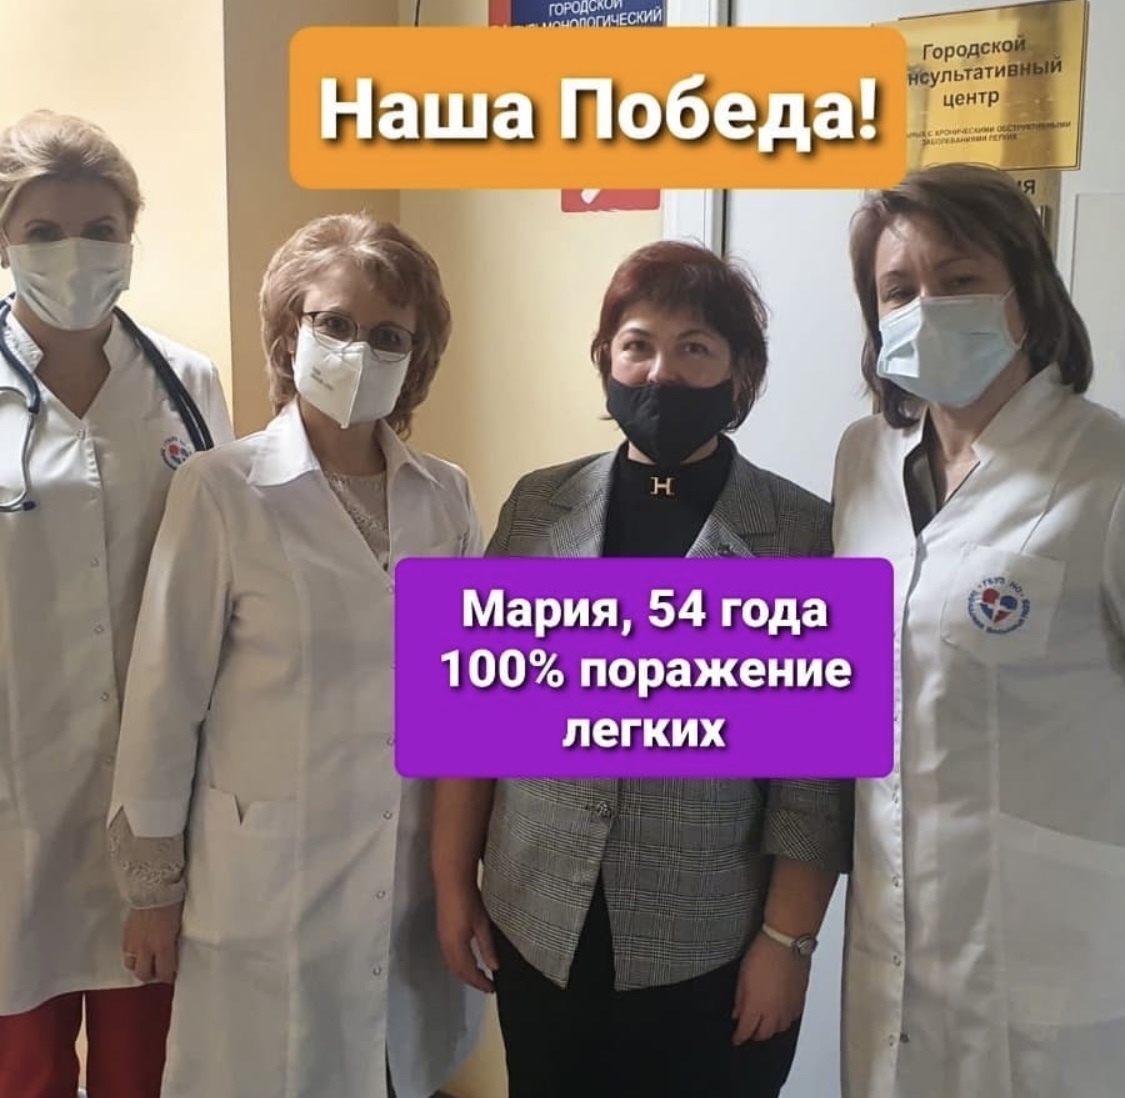 Пациентку со 100% поражением легких спасли в нижегородской больнице